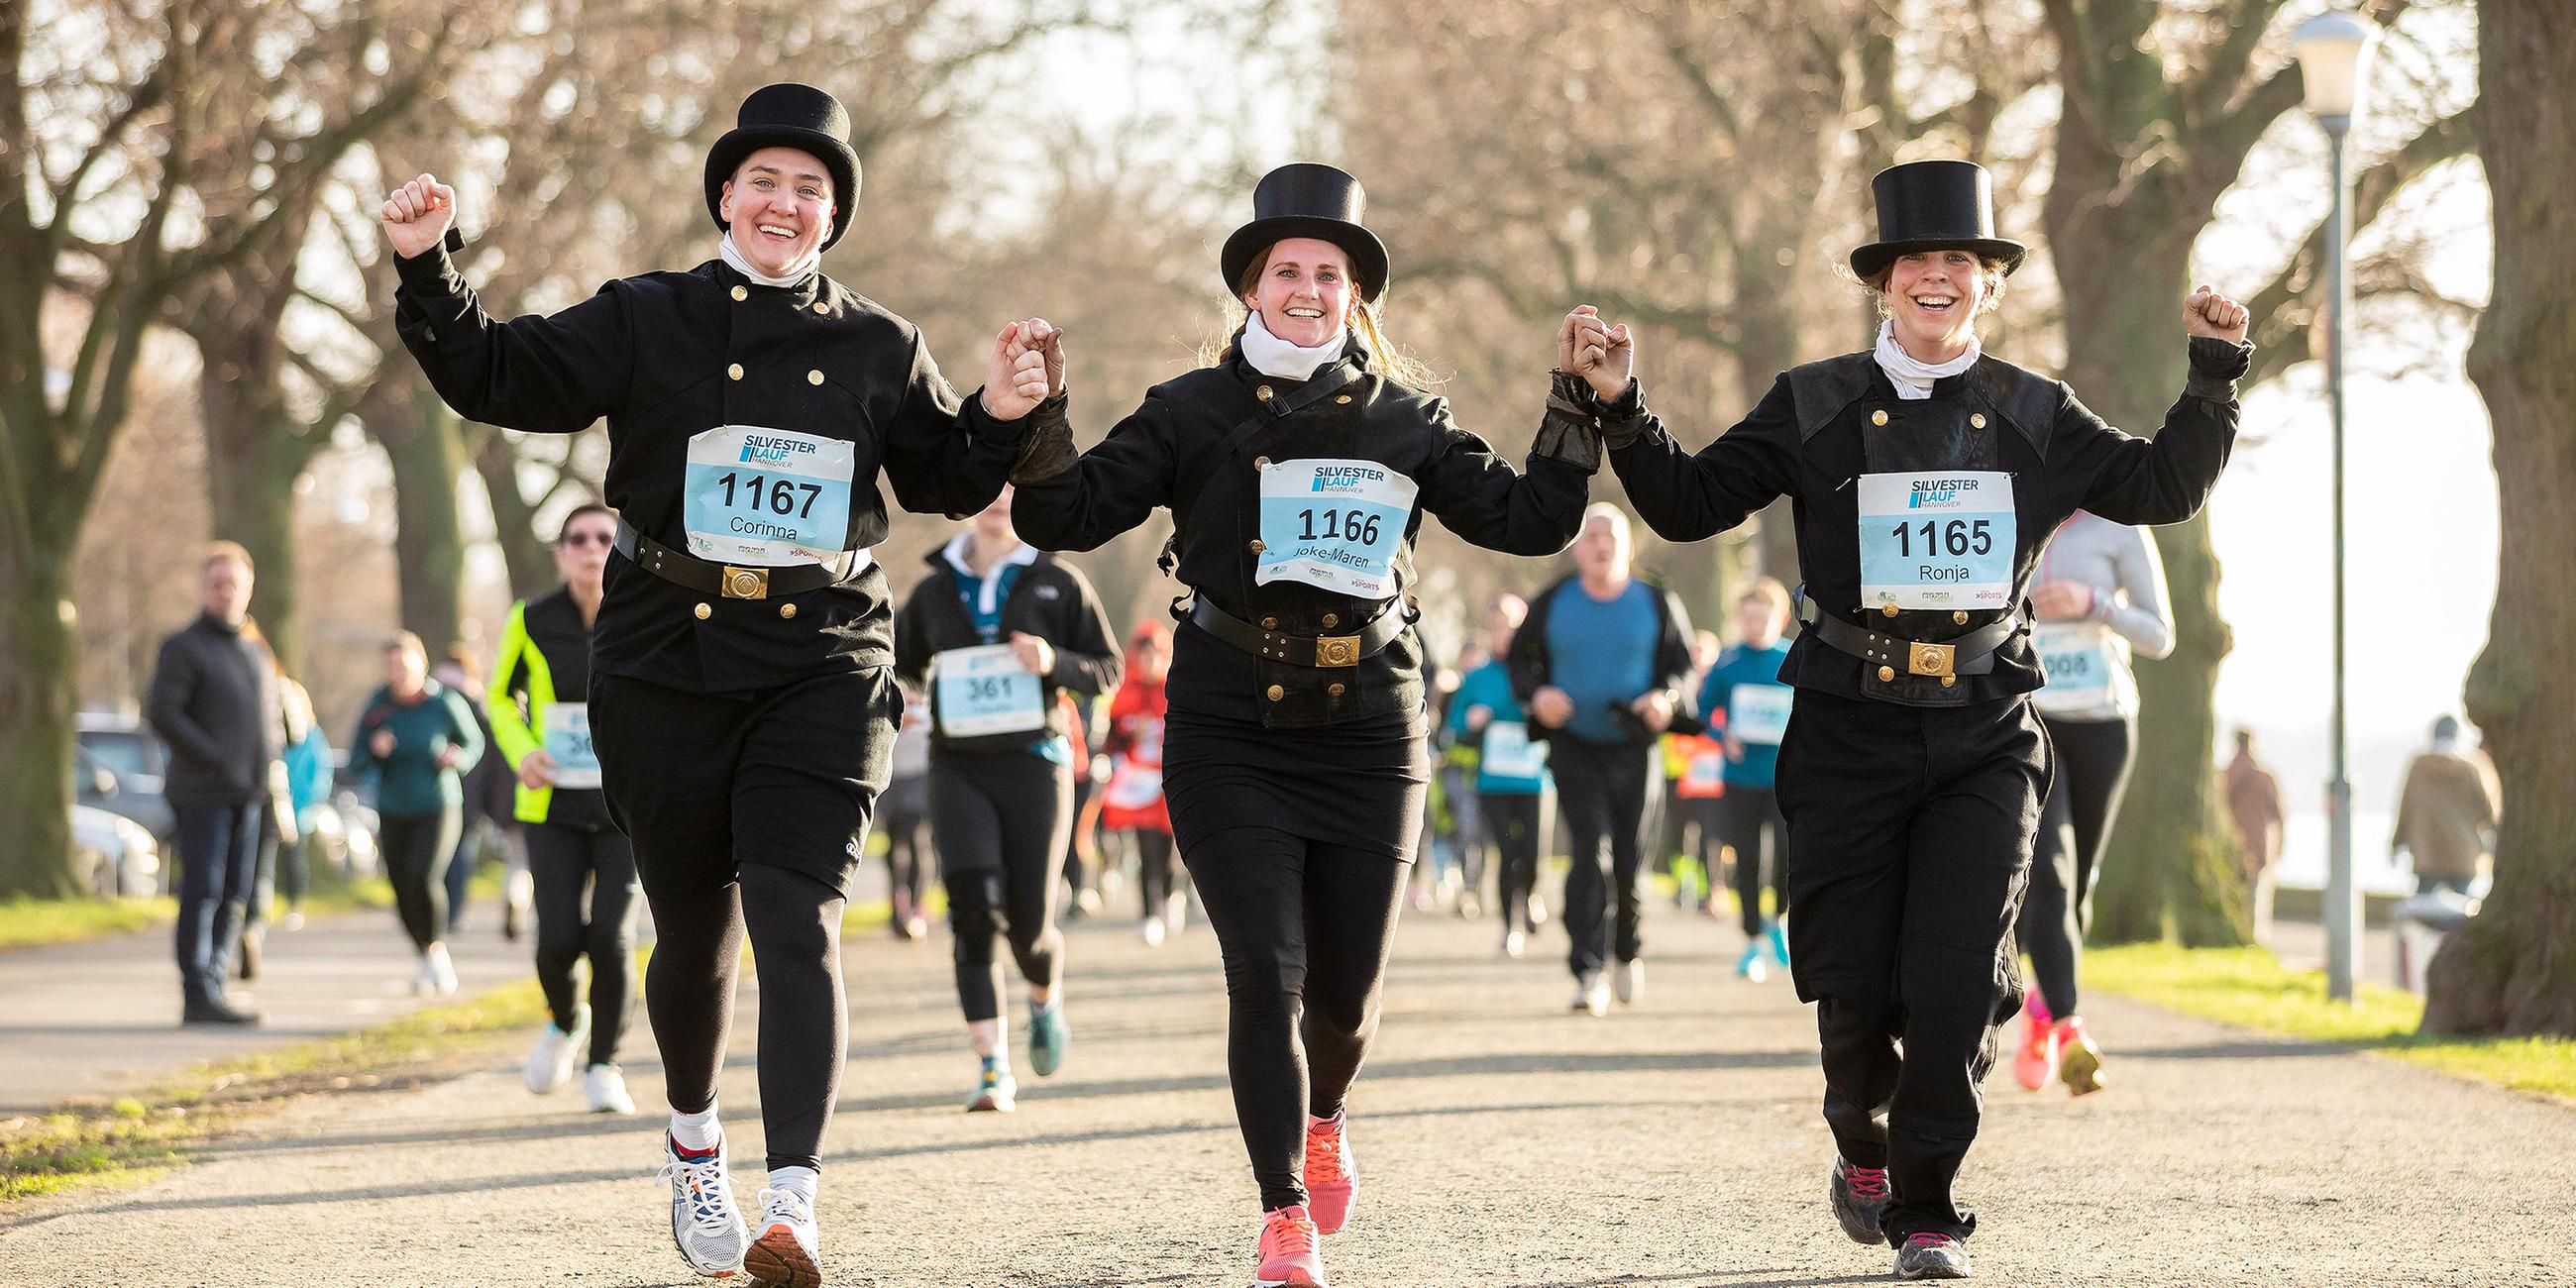 Teilnehmer beim Silvesterlauf in Hannover laufen die rund 5,8 km lange Strecke in Arbeitskleidung.